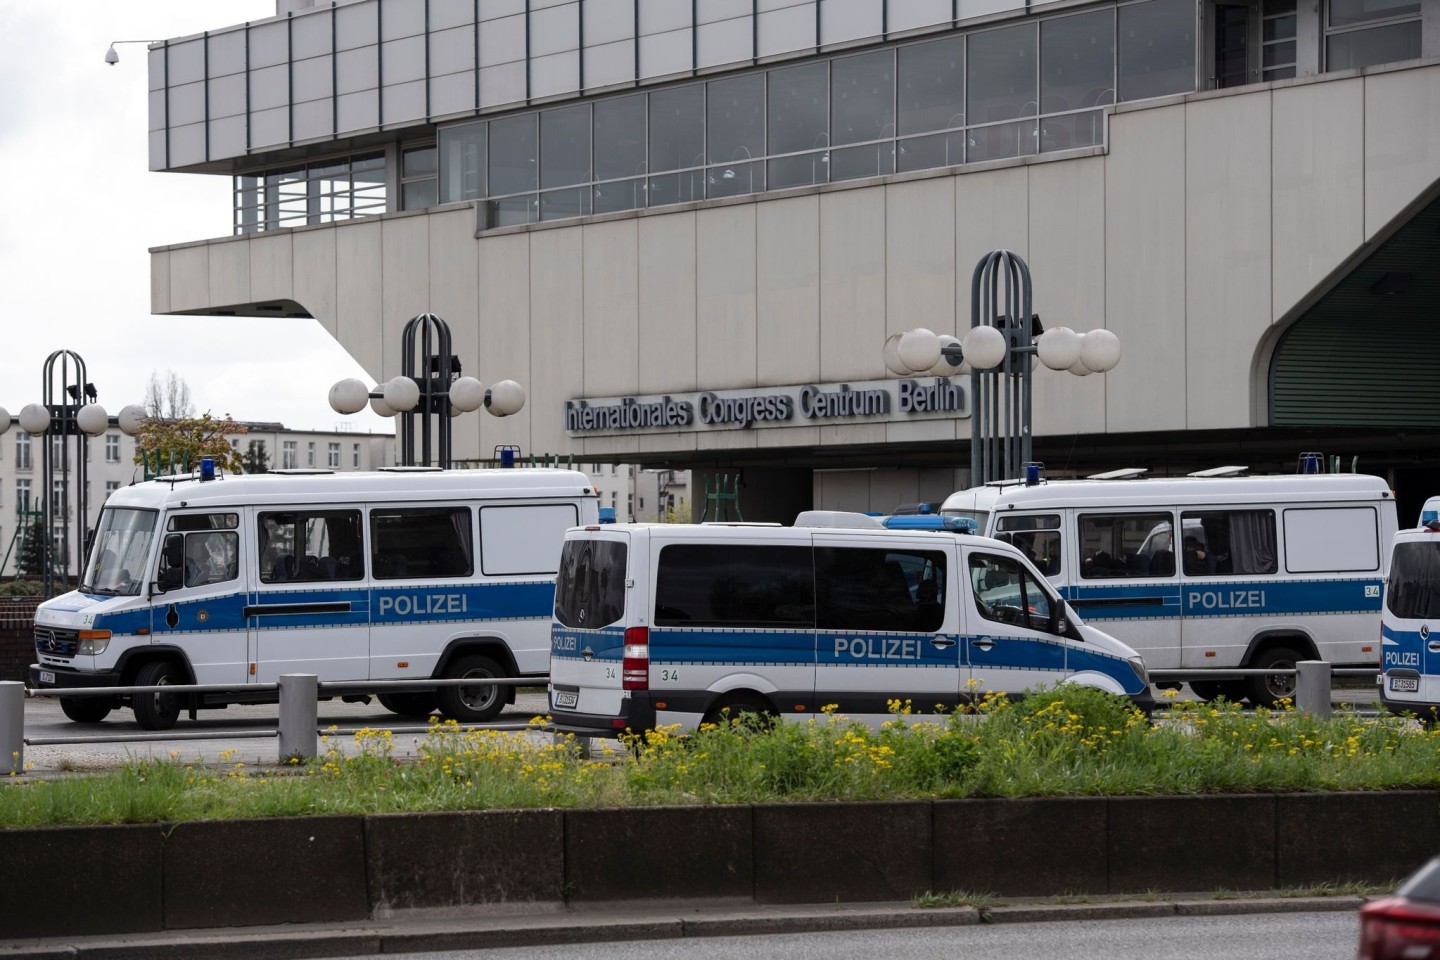 Einsatzfahrzeuge der Polizei stehen am ehemaligen Kongresszentrum ICC in Berlin.